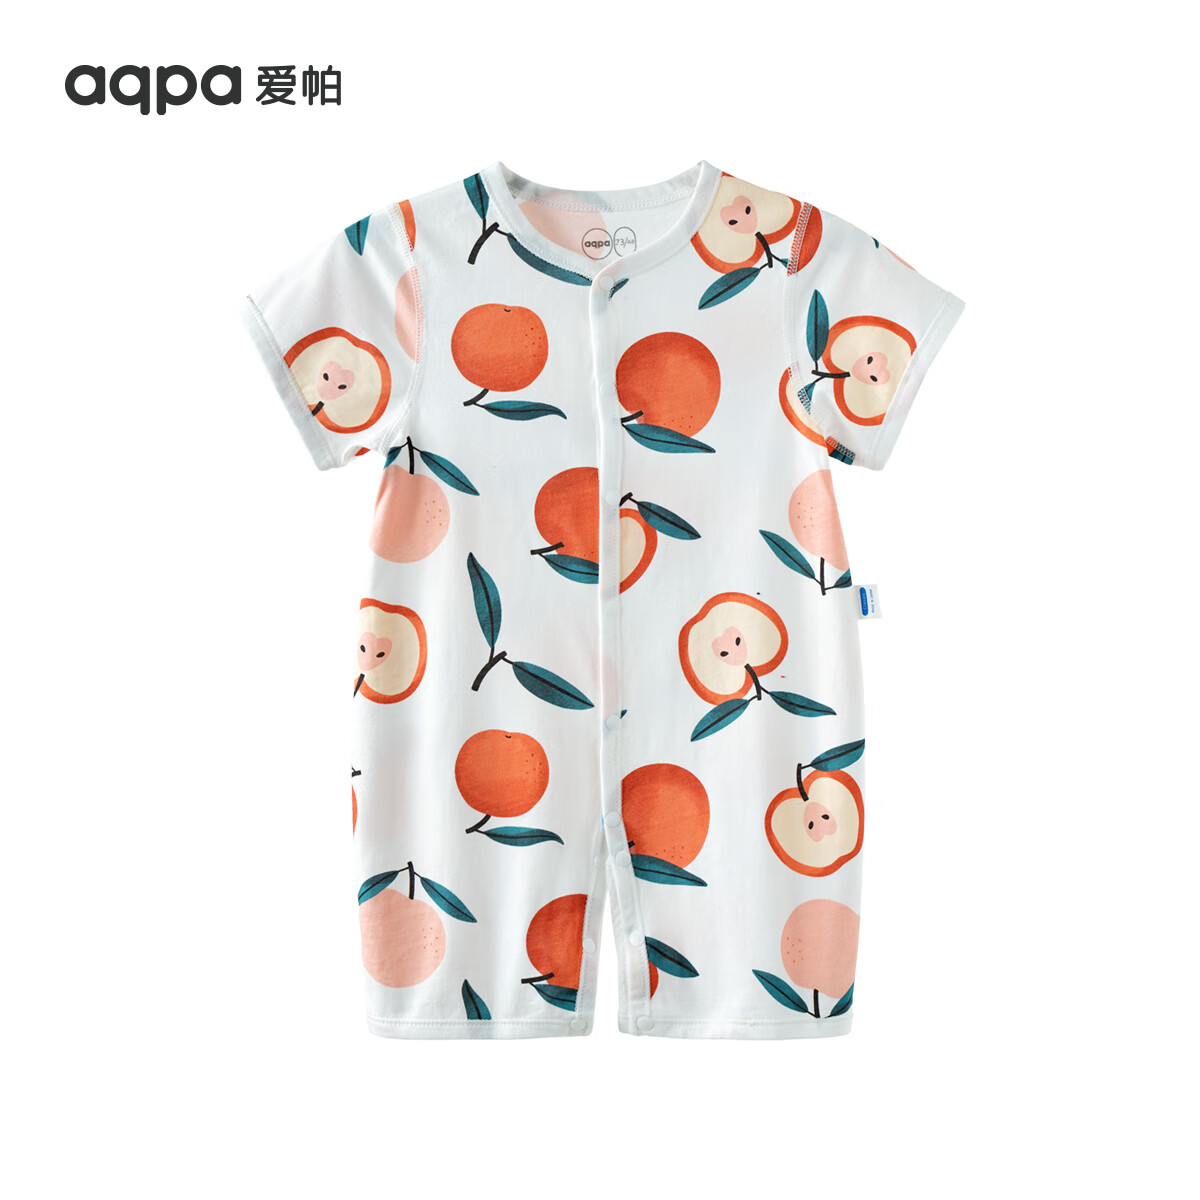 aqpa【新疆棉】婴儿纯棉连体衣幼儿爬服夏季新生宝宝衣服薄款